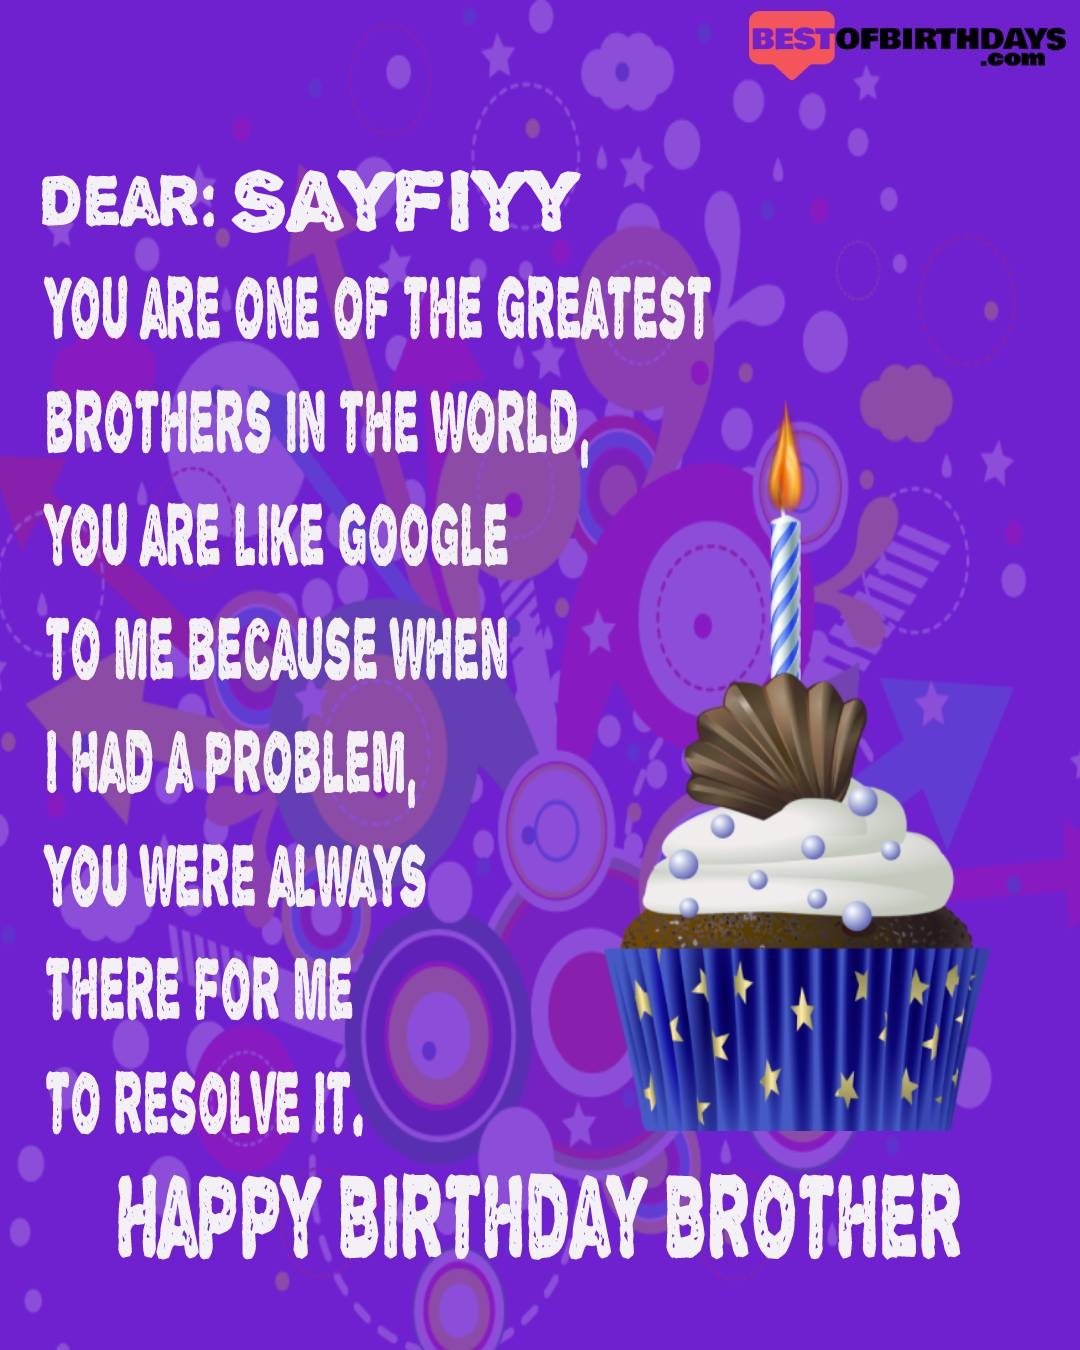 Happy birthday sayfiyy bhai brother bro